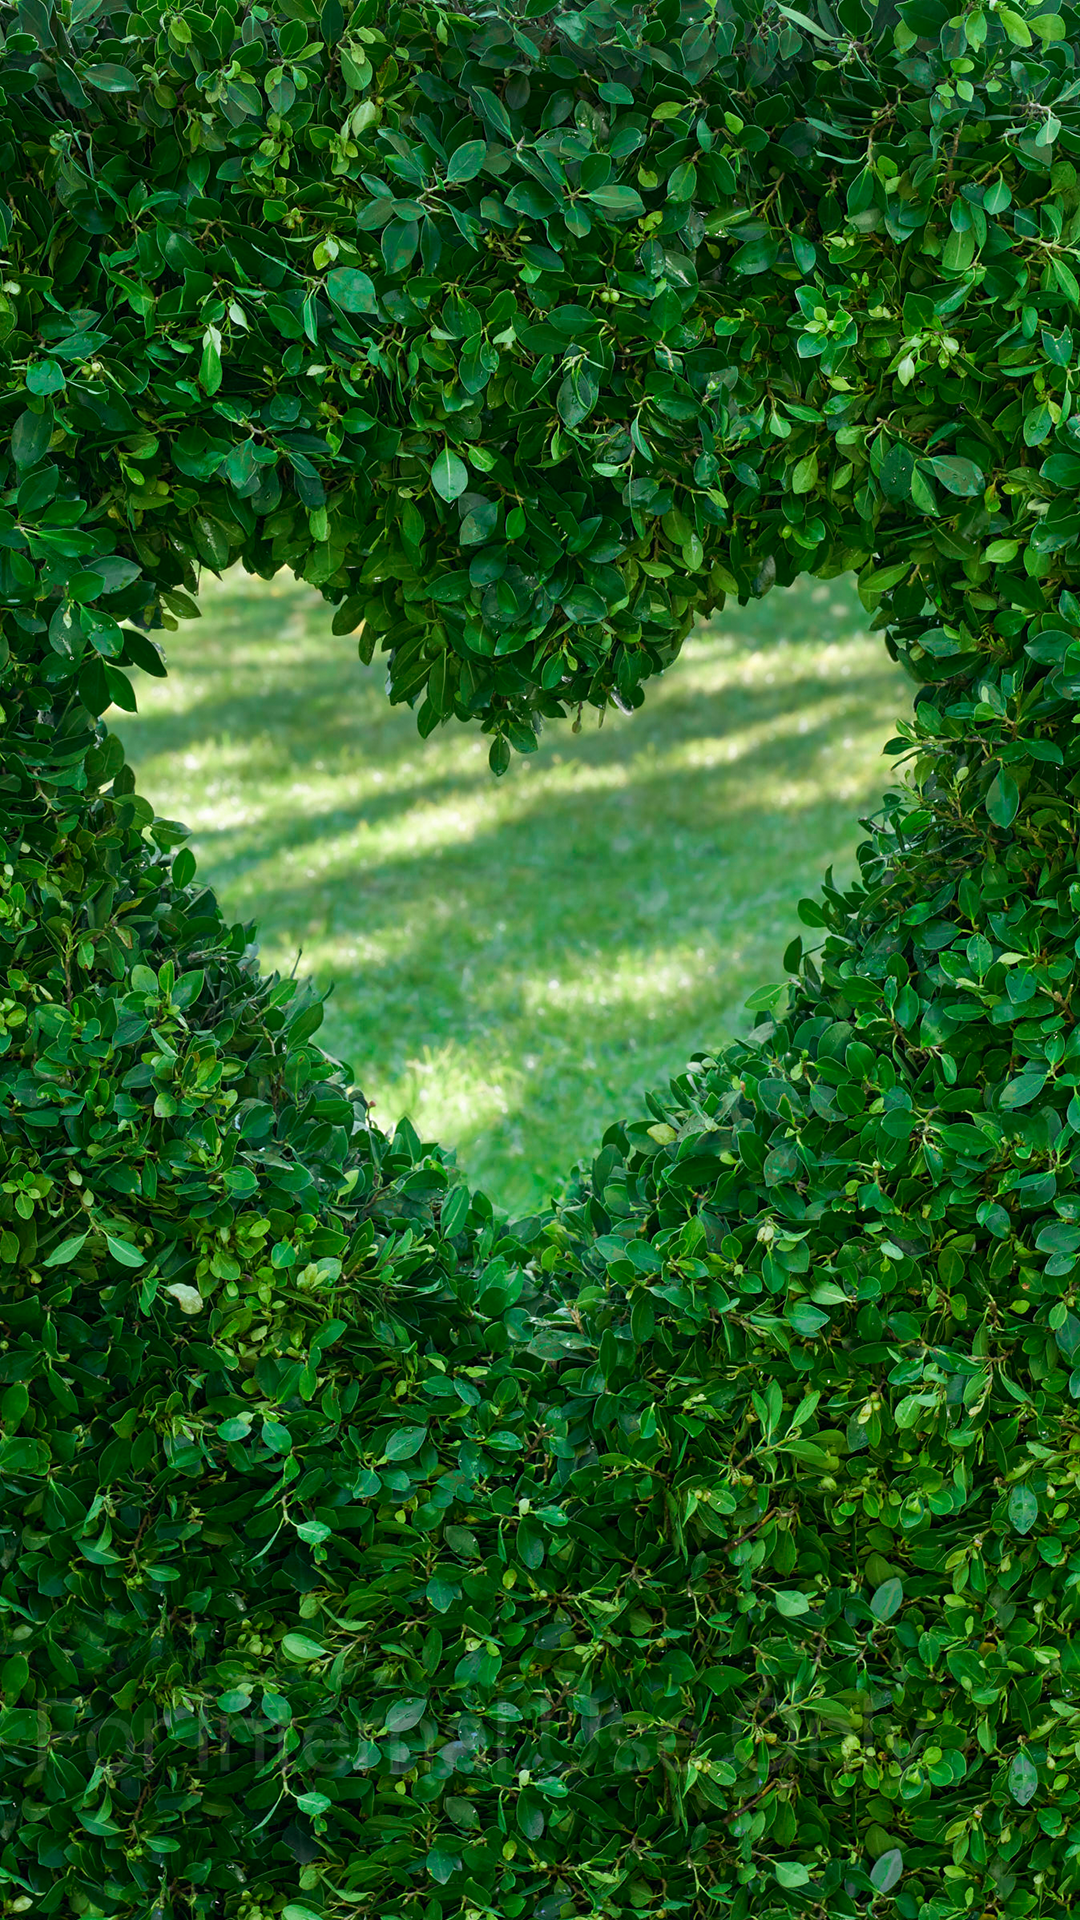 Corazón formado en un seto de hojas verdes y al fondo se ve el césped